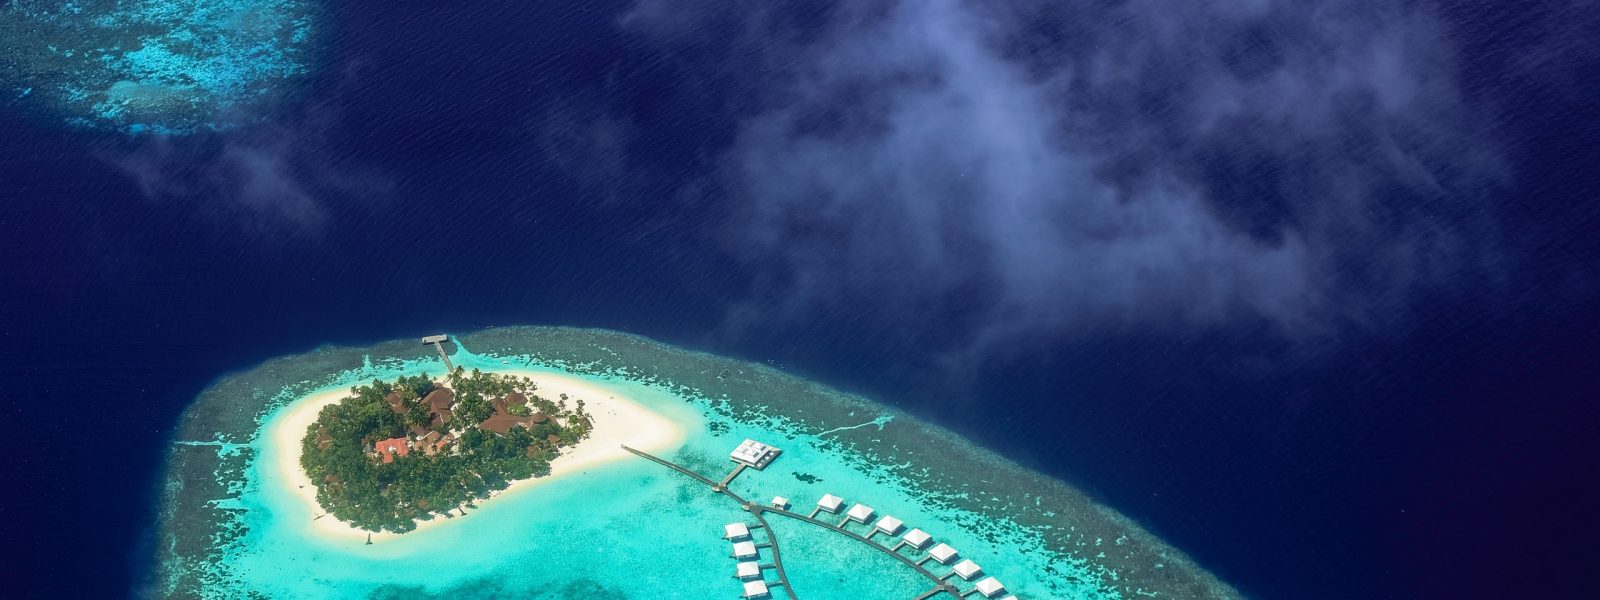 pexels-asad-photo-maldives-3293187